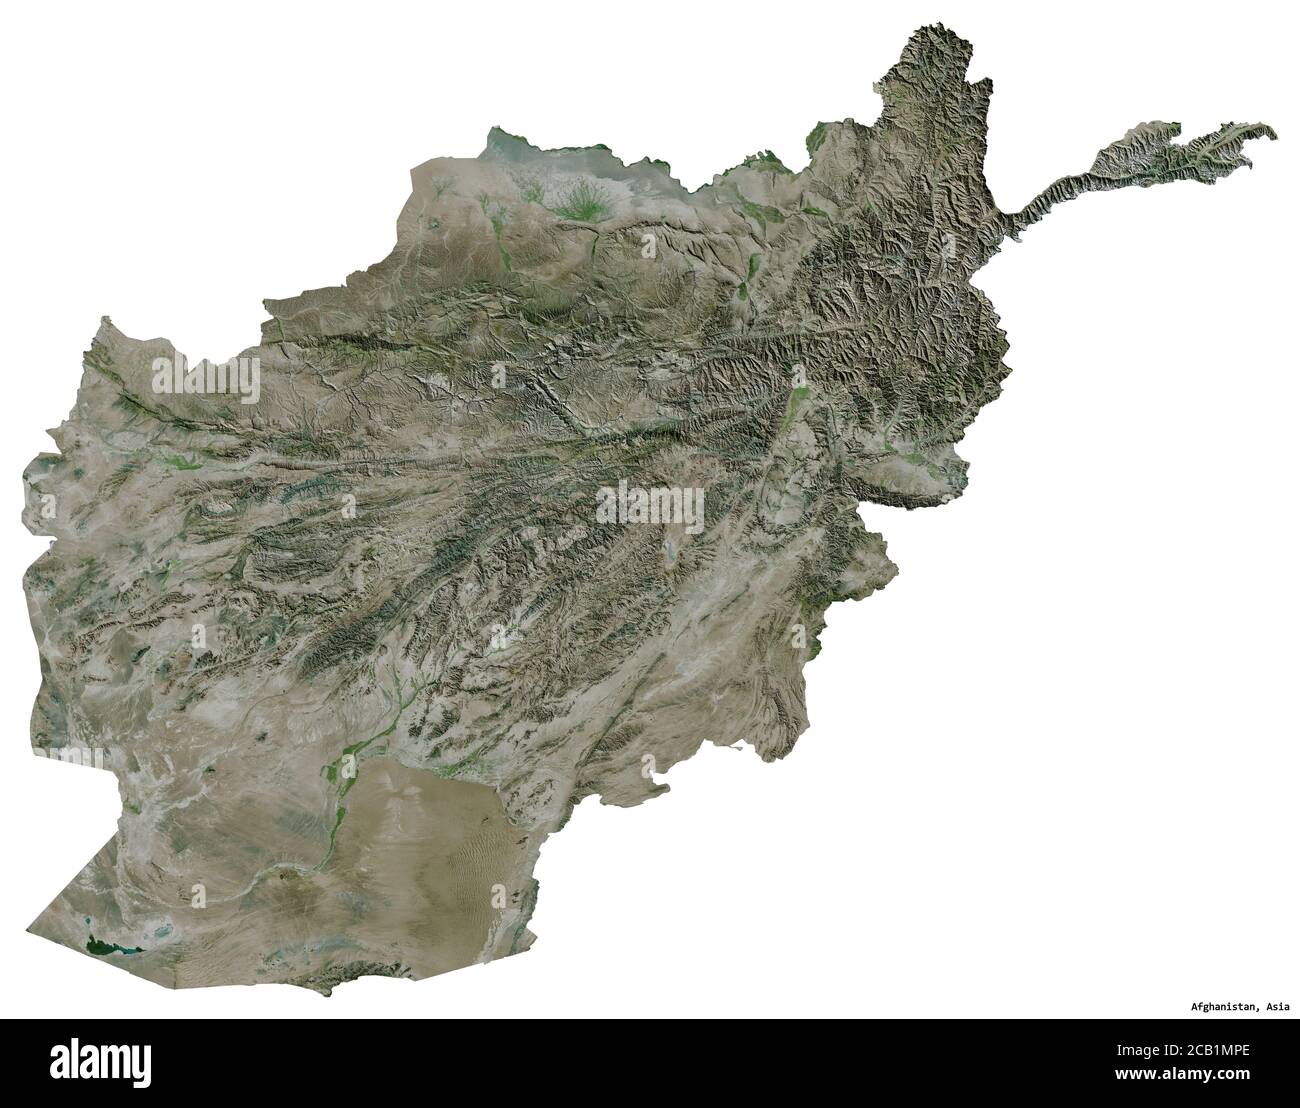 Forma dell'Afghanistan con la sua capitale isolata su sfondo bianco. Immagini satellitari. Rendering 3D Foto Stock